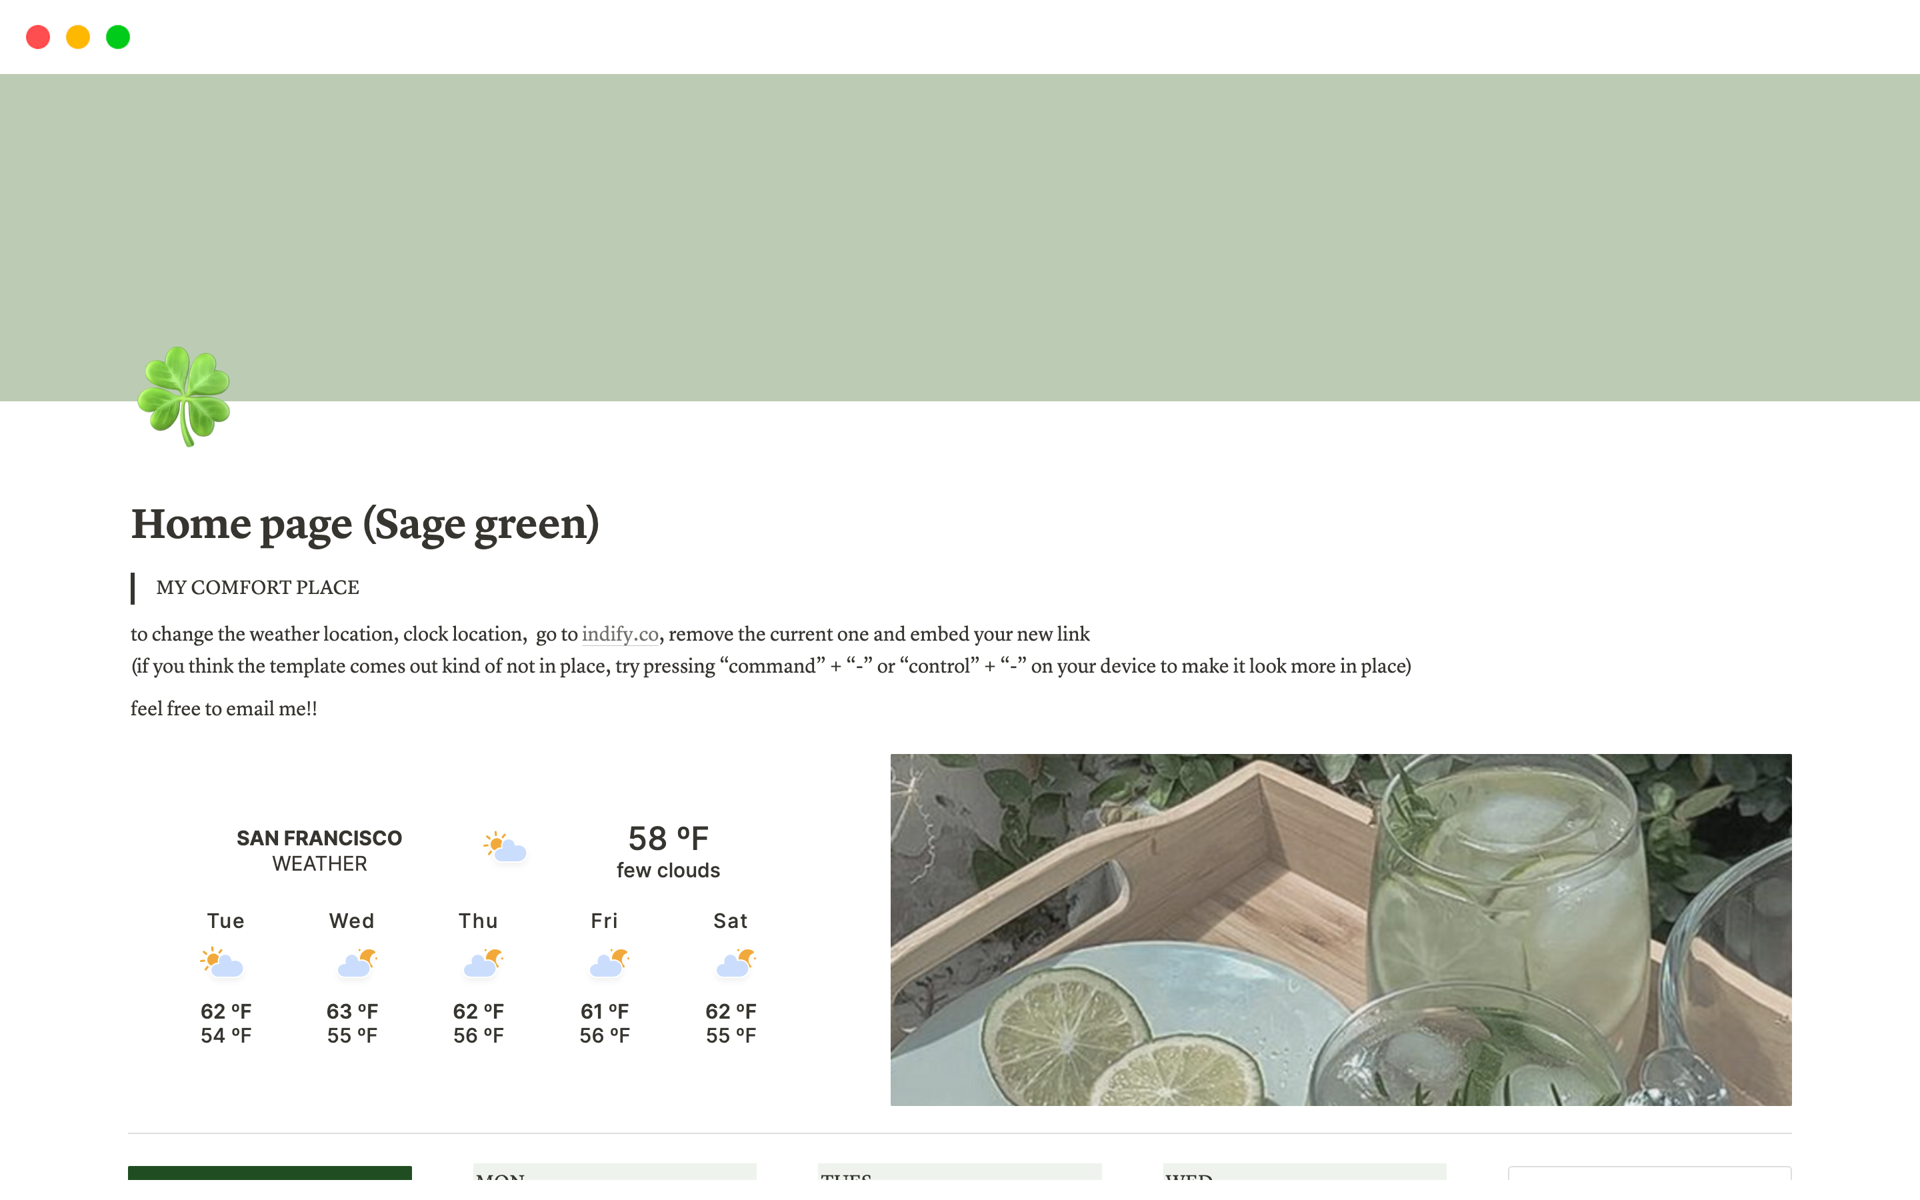 Aperçu du modèle de Home page (Sage green)